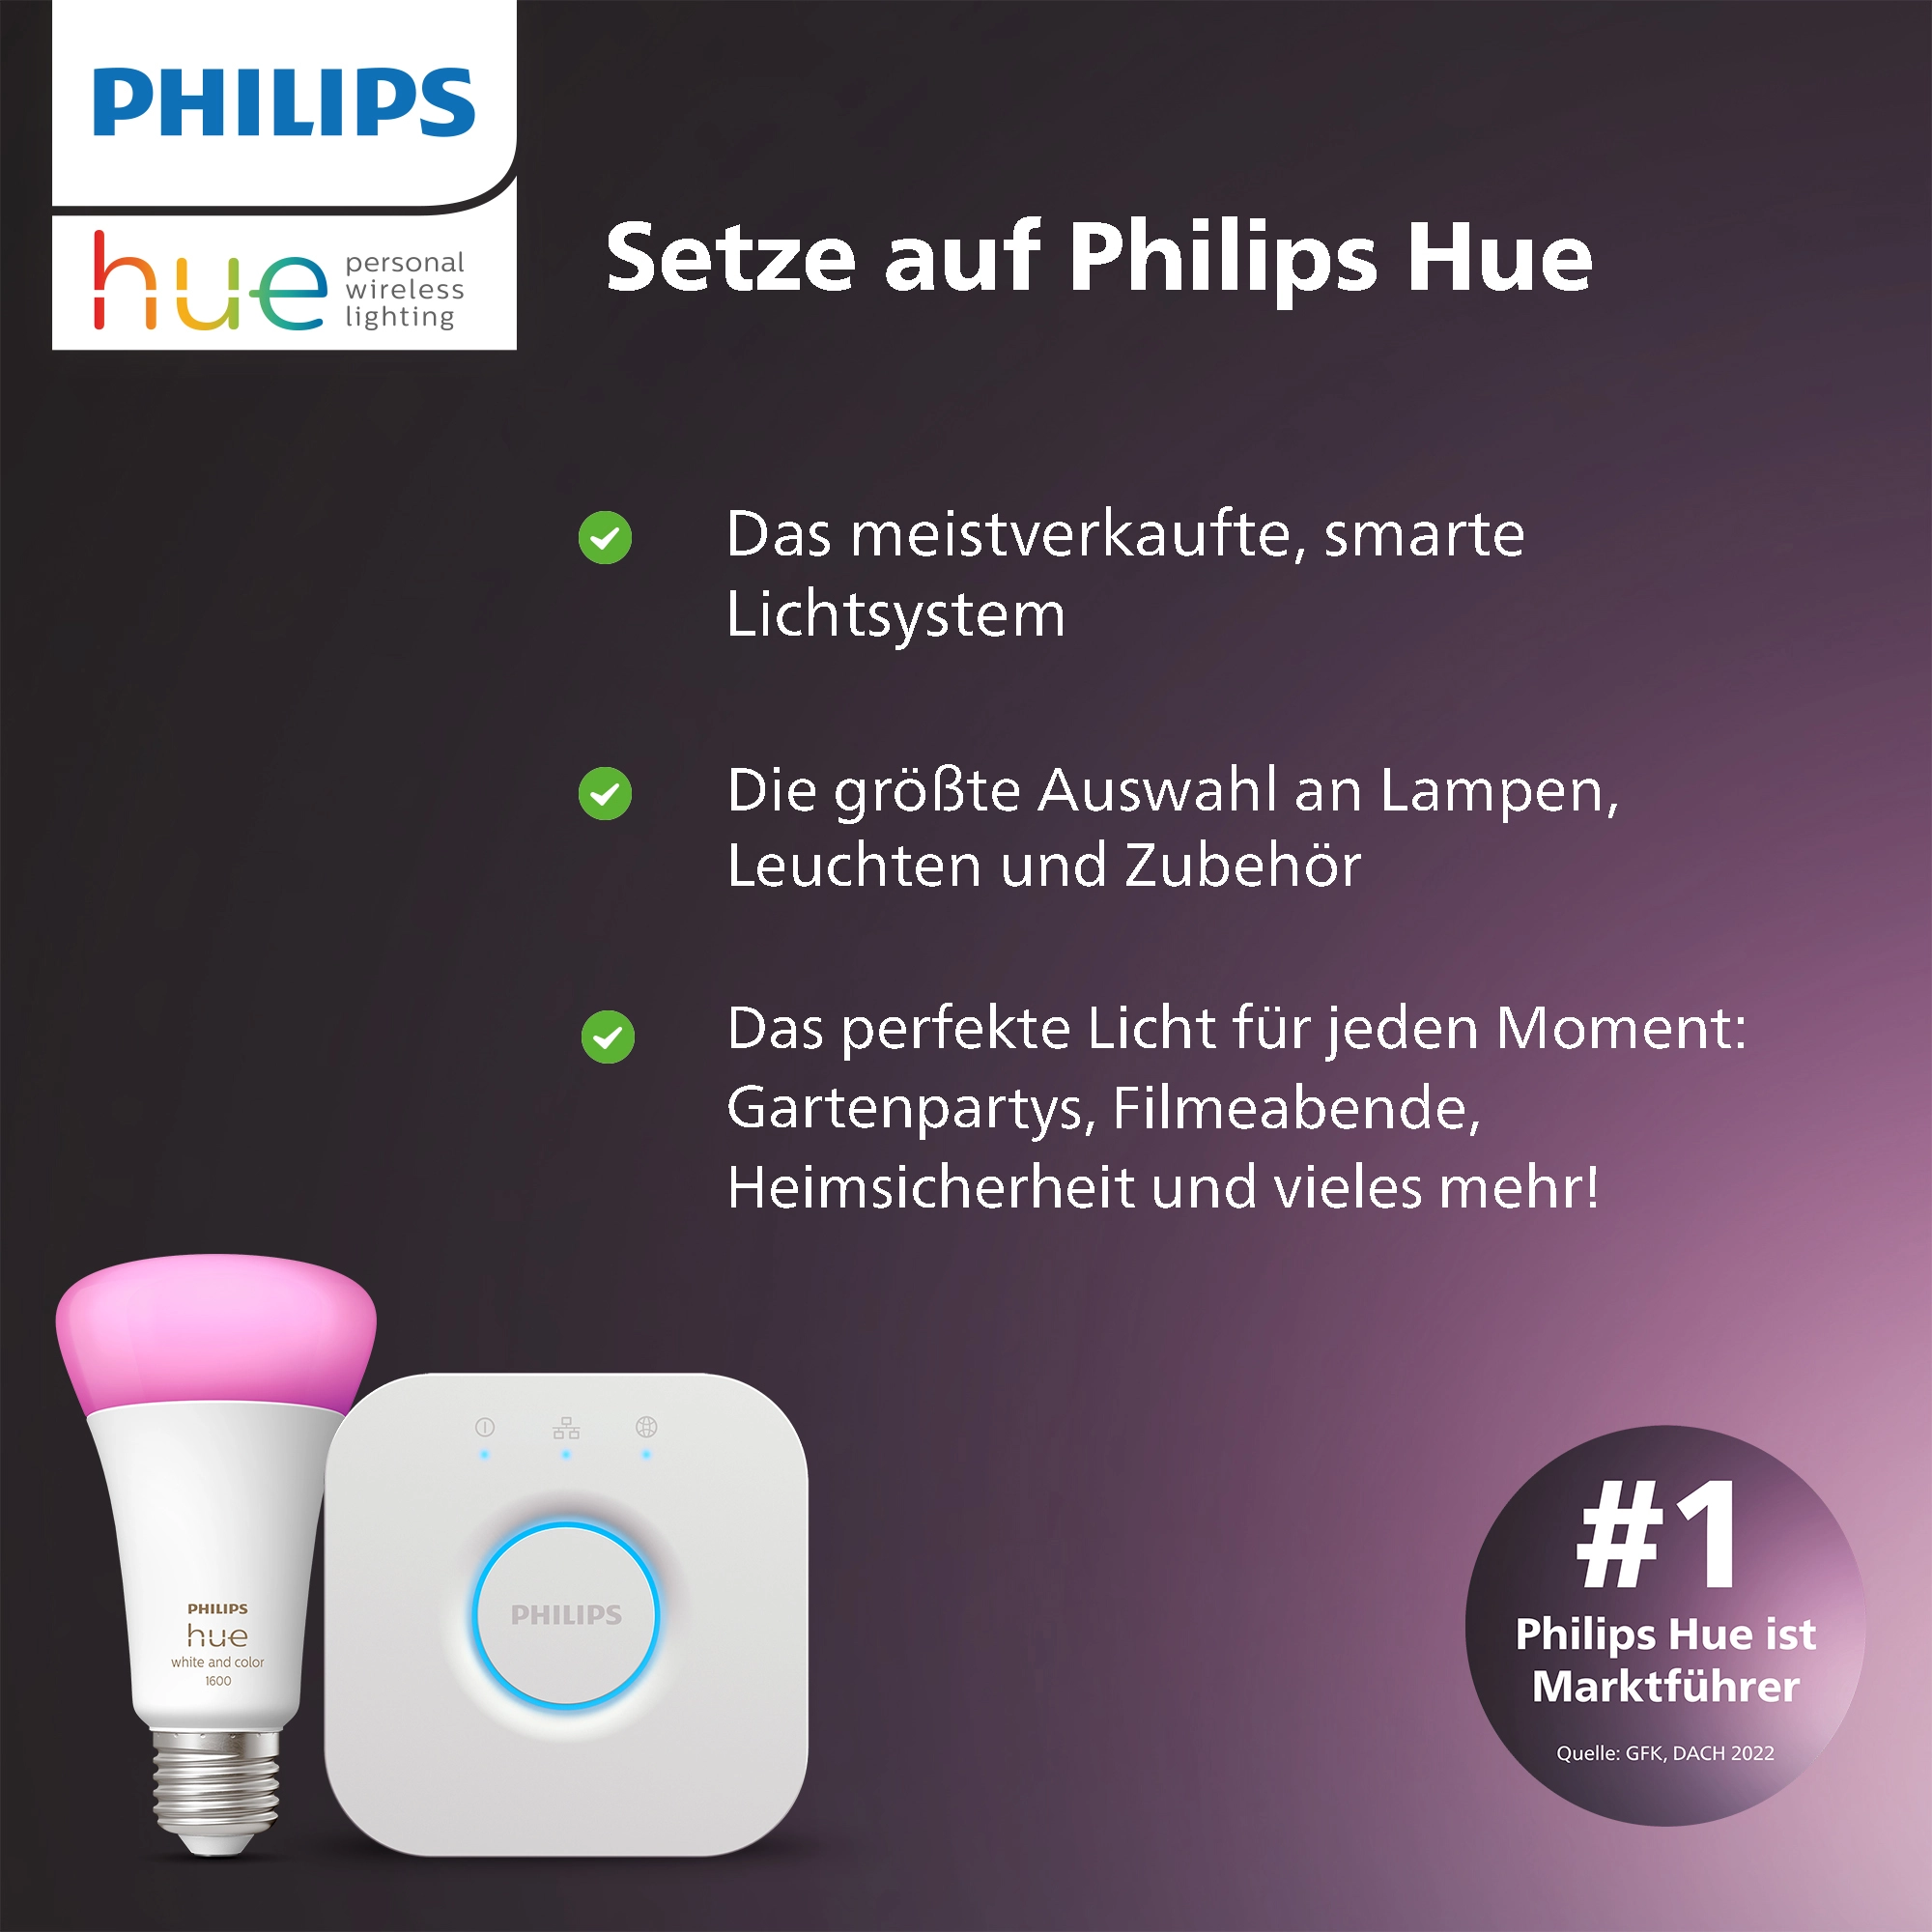 Philips Hue White and Color Ambiance, Kit de démarrage 2 ampoules